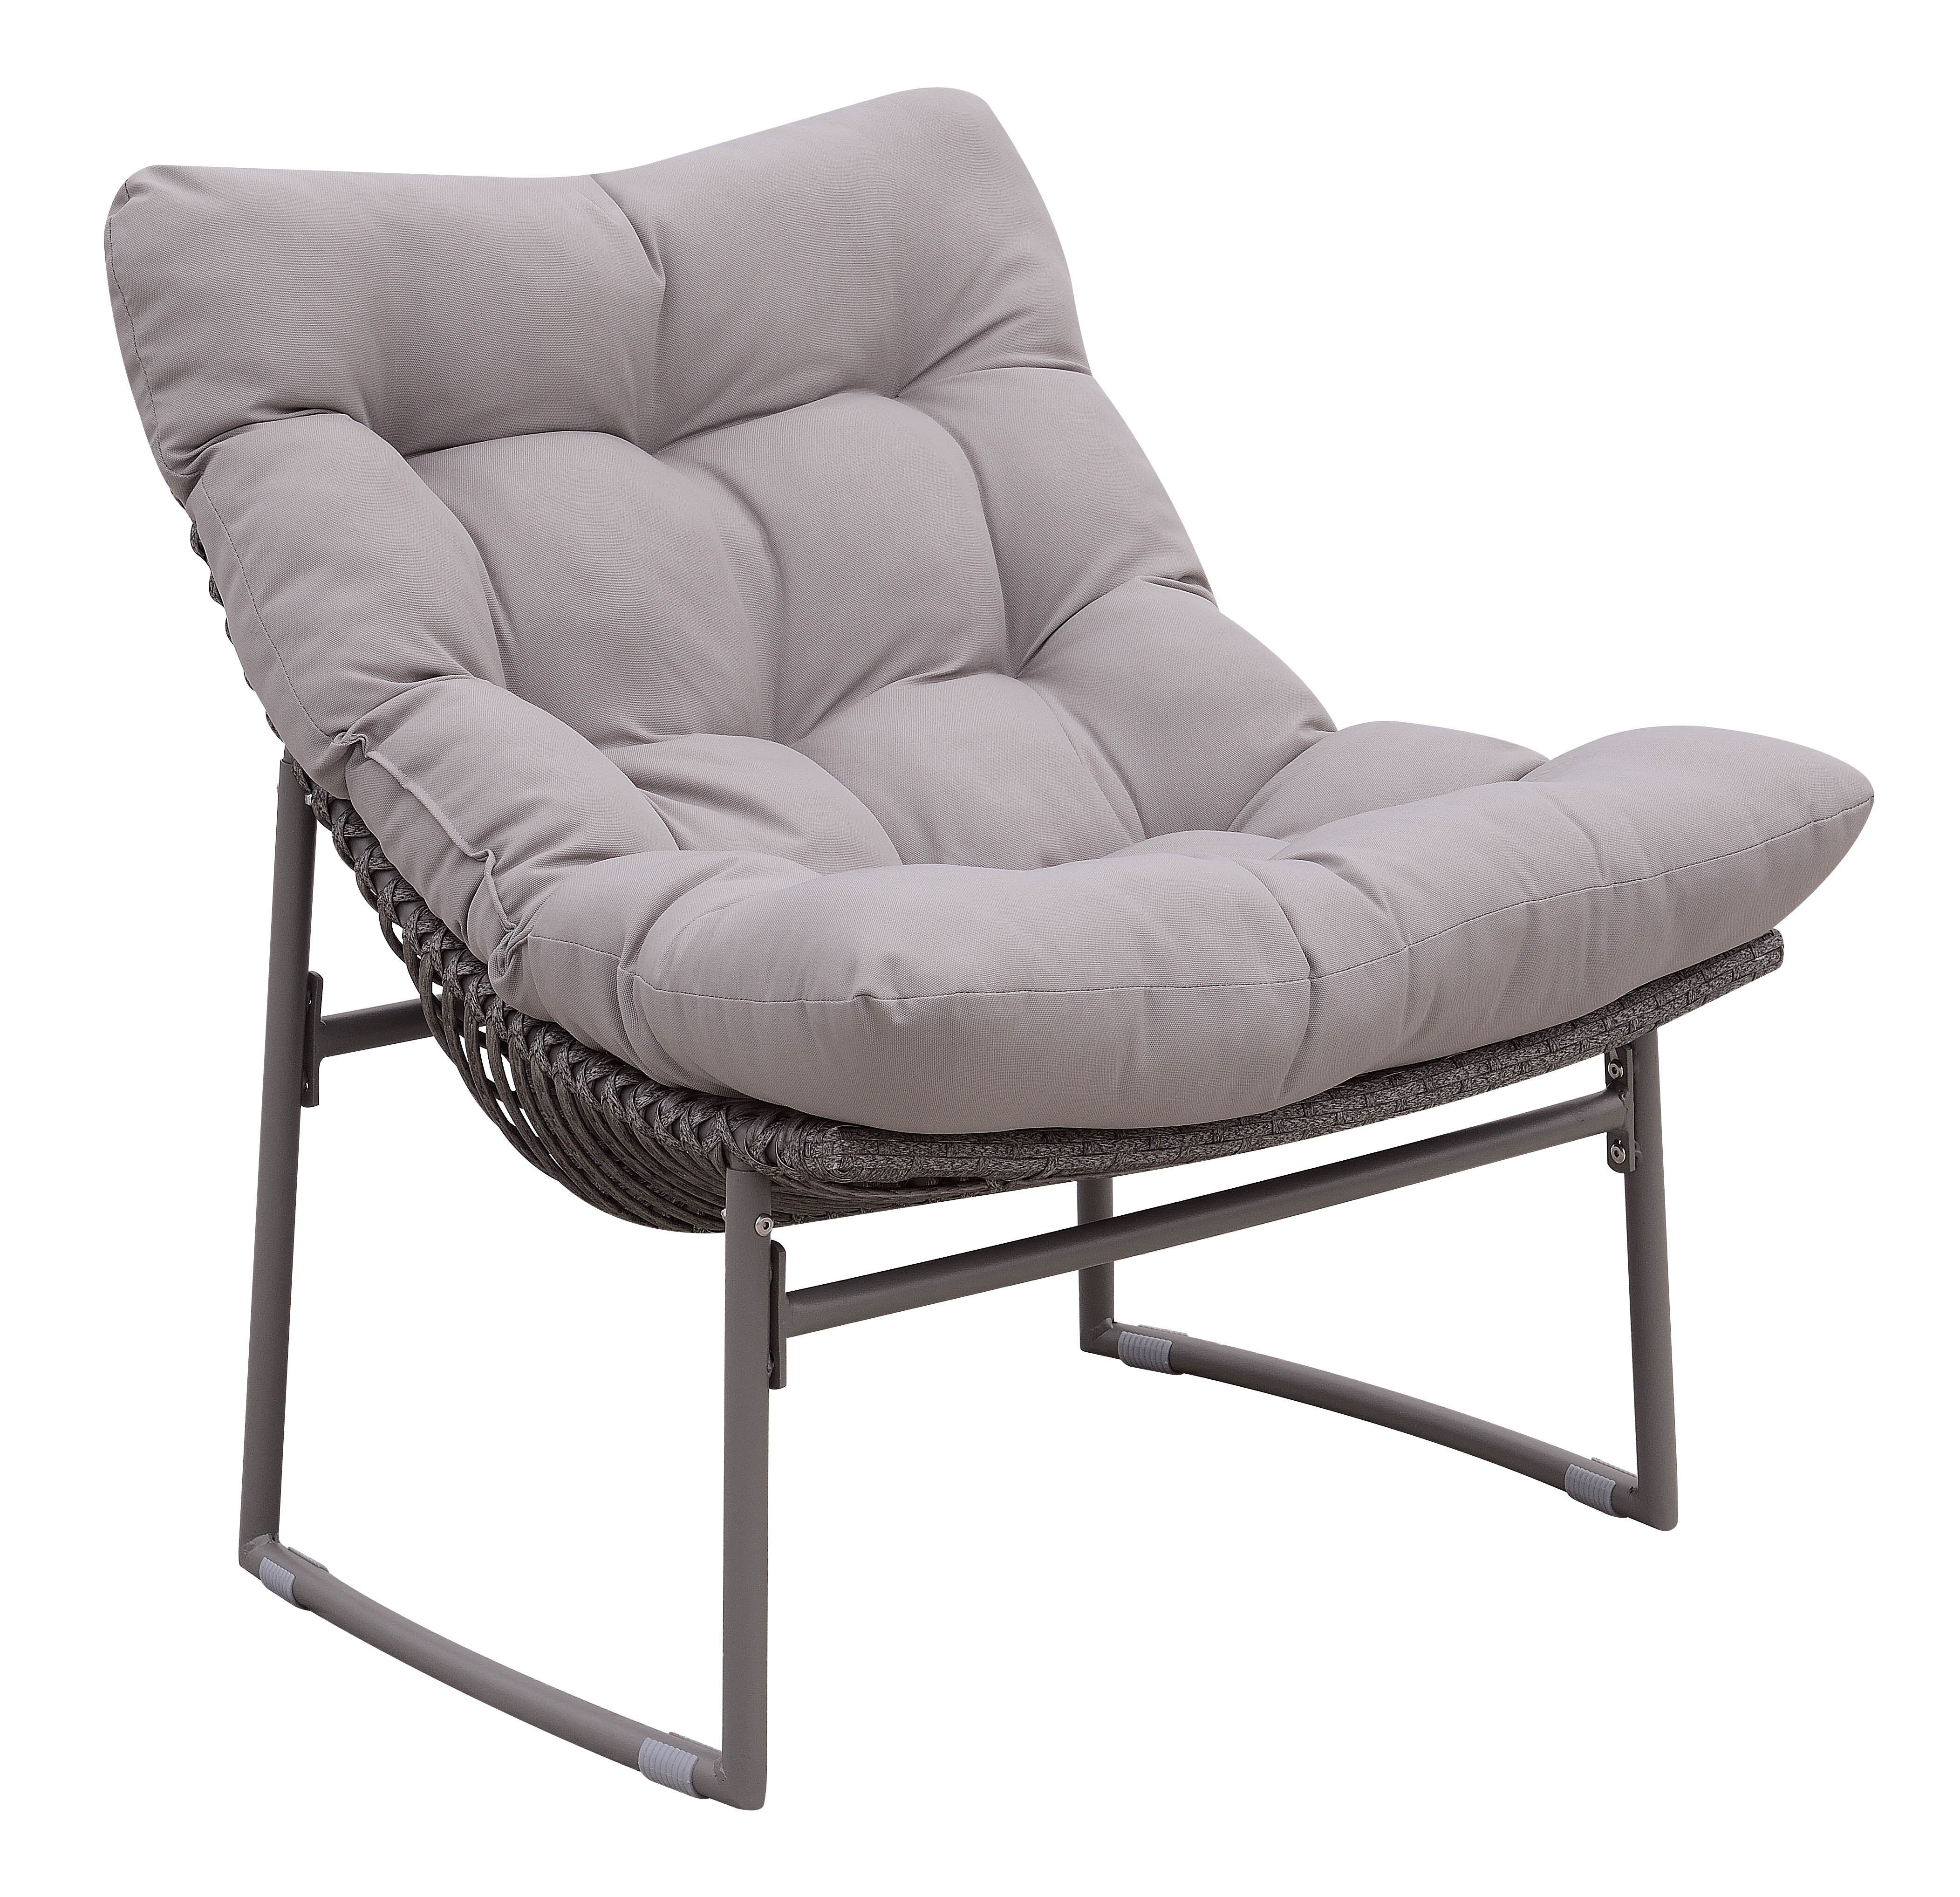 Latitude Run Bequette Papasan Chair With Cushion Reviews Wayfair